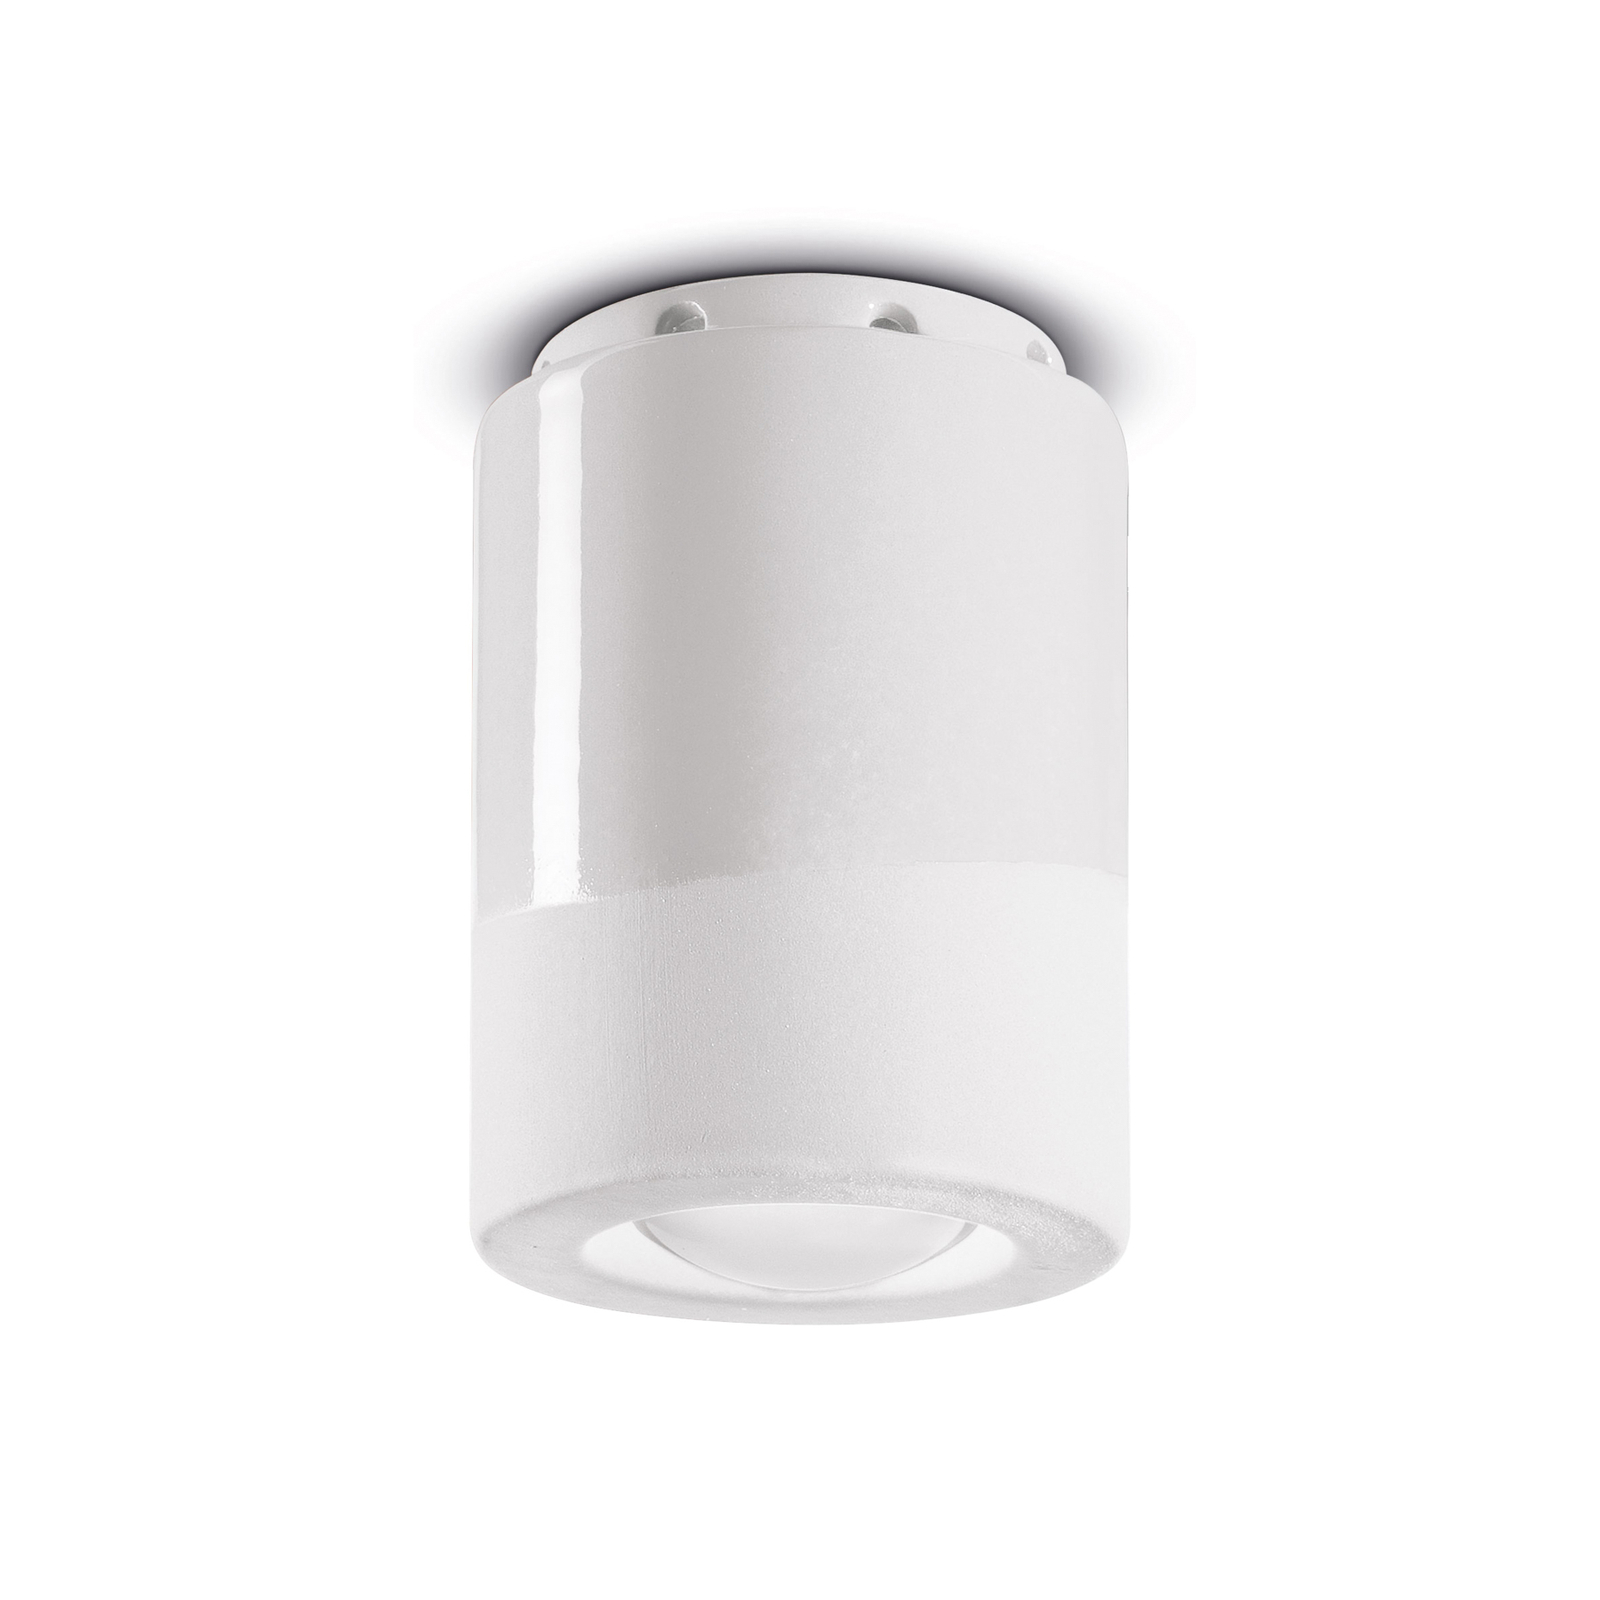 PI loftslampe, cylindrisk, Ø 8,5 cm, hvid